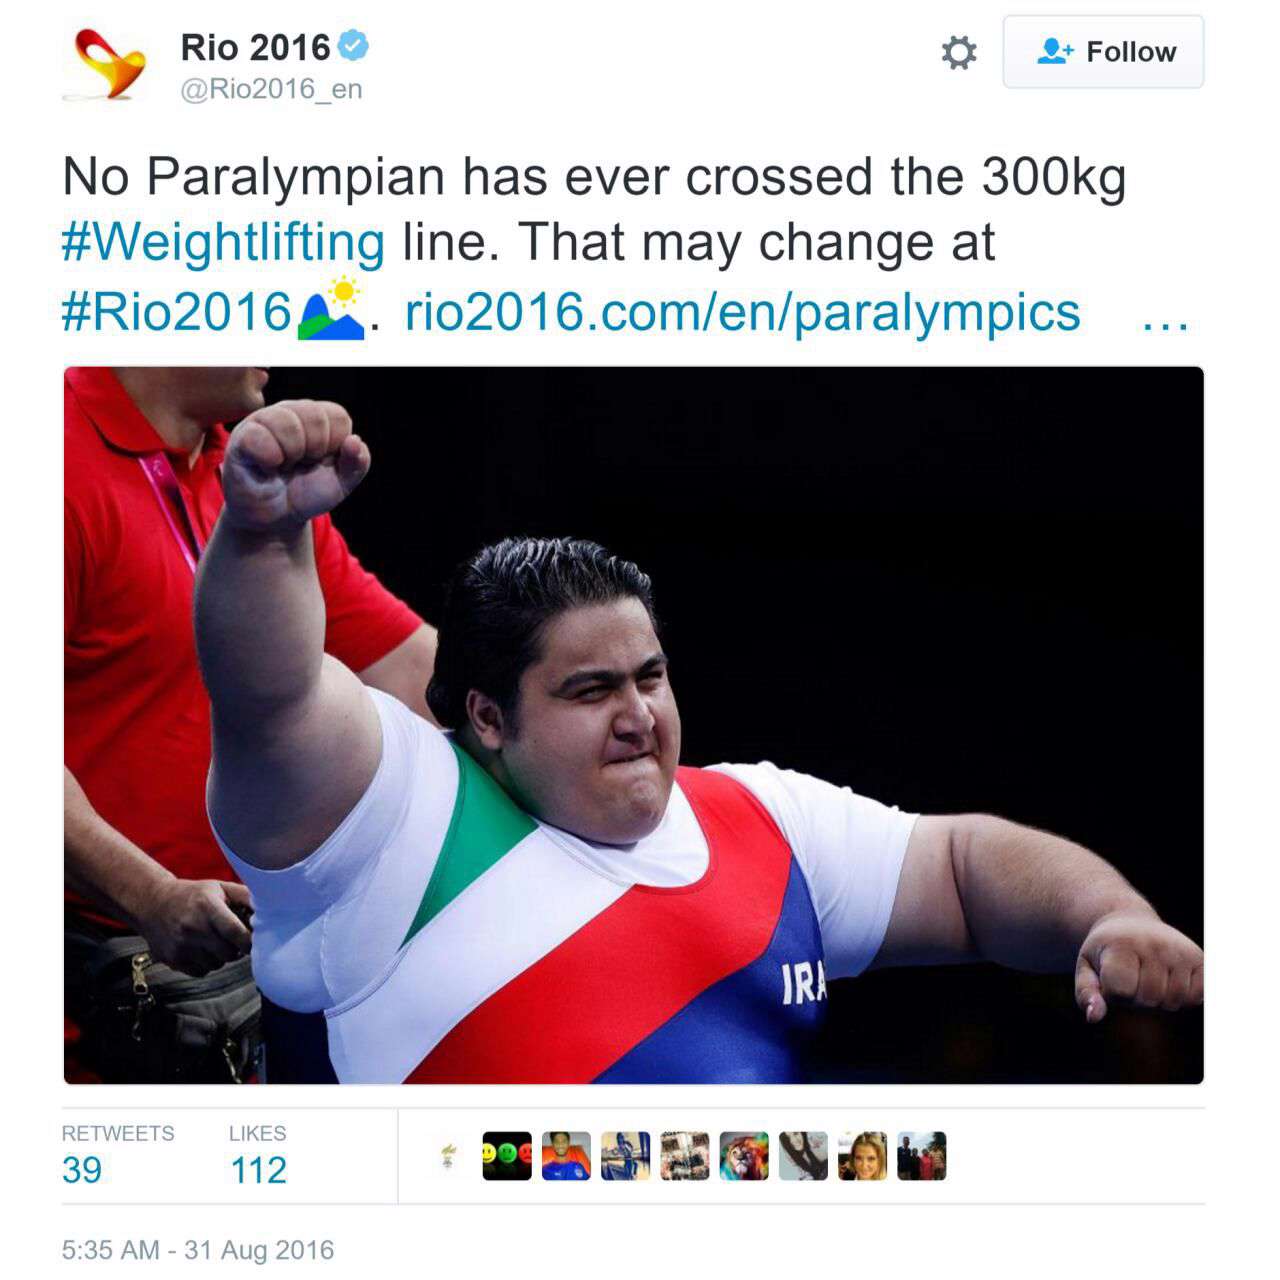 تا حالا هیچ انسانی نتونسته در پارالمپیک وزنه ۳۰۰ کیلوگرمی بزنه ولی شاید امسال تاریخ عوض بشه چون سیامند رحمان از ایران حضور داره